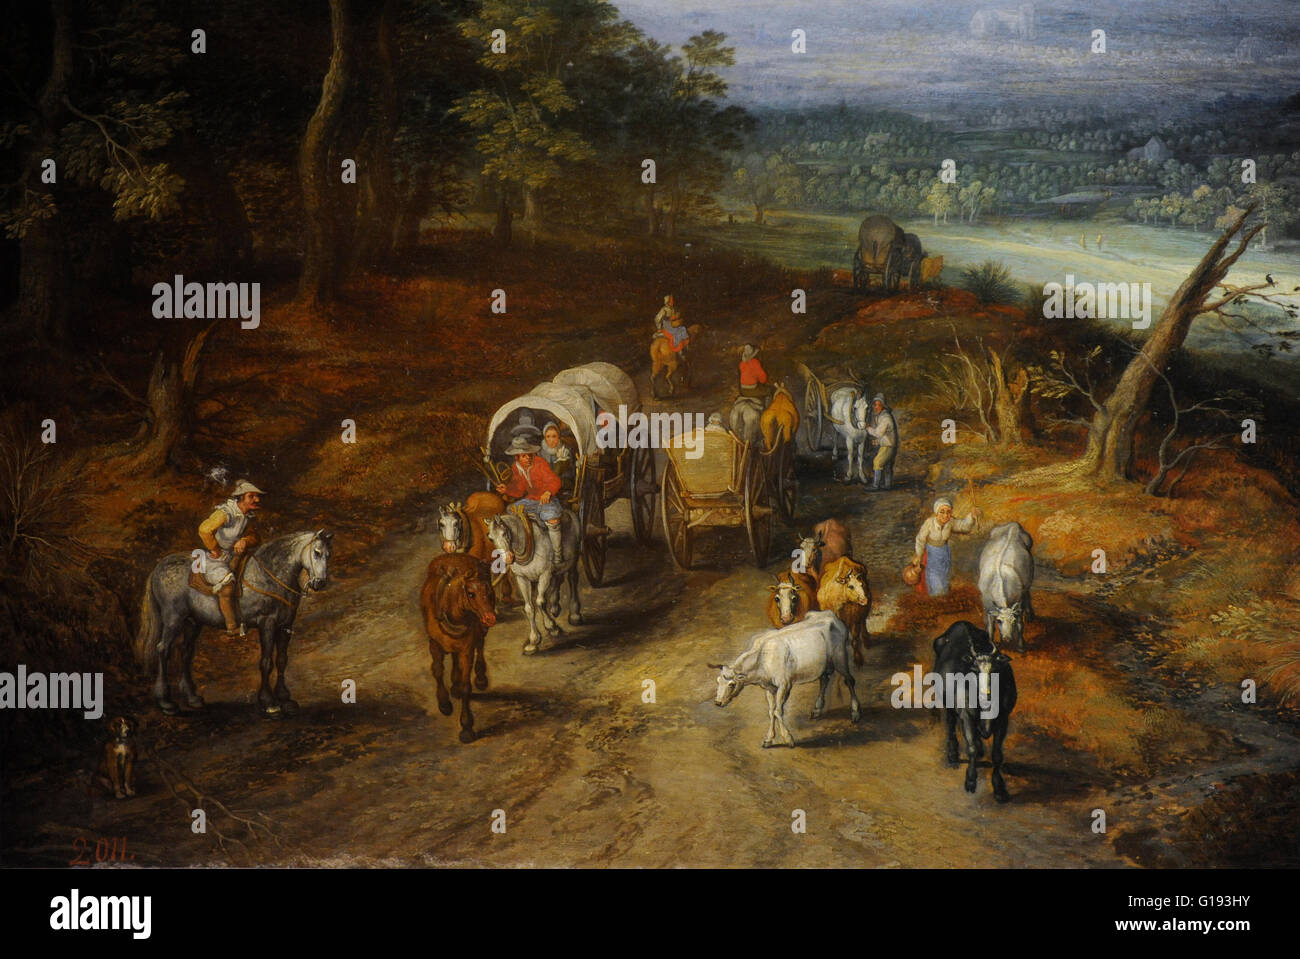 Jan Brueghel l'ancien (Brueghel de Velours). 1568-1625. Peintre flamand. Route de campagne. Huile sur panneau. Sons baroques. Le Musée de l'Ermitage. Saint Petersburg. La Russie. Détail. Banque D'Images